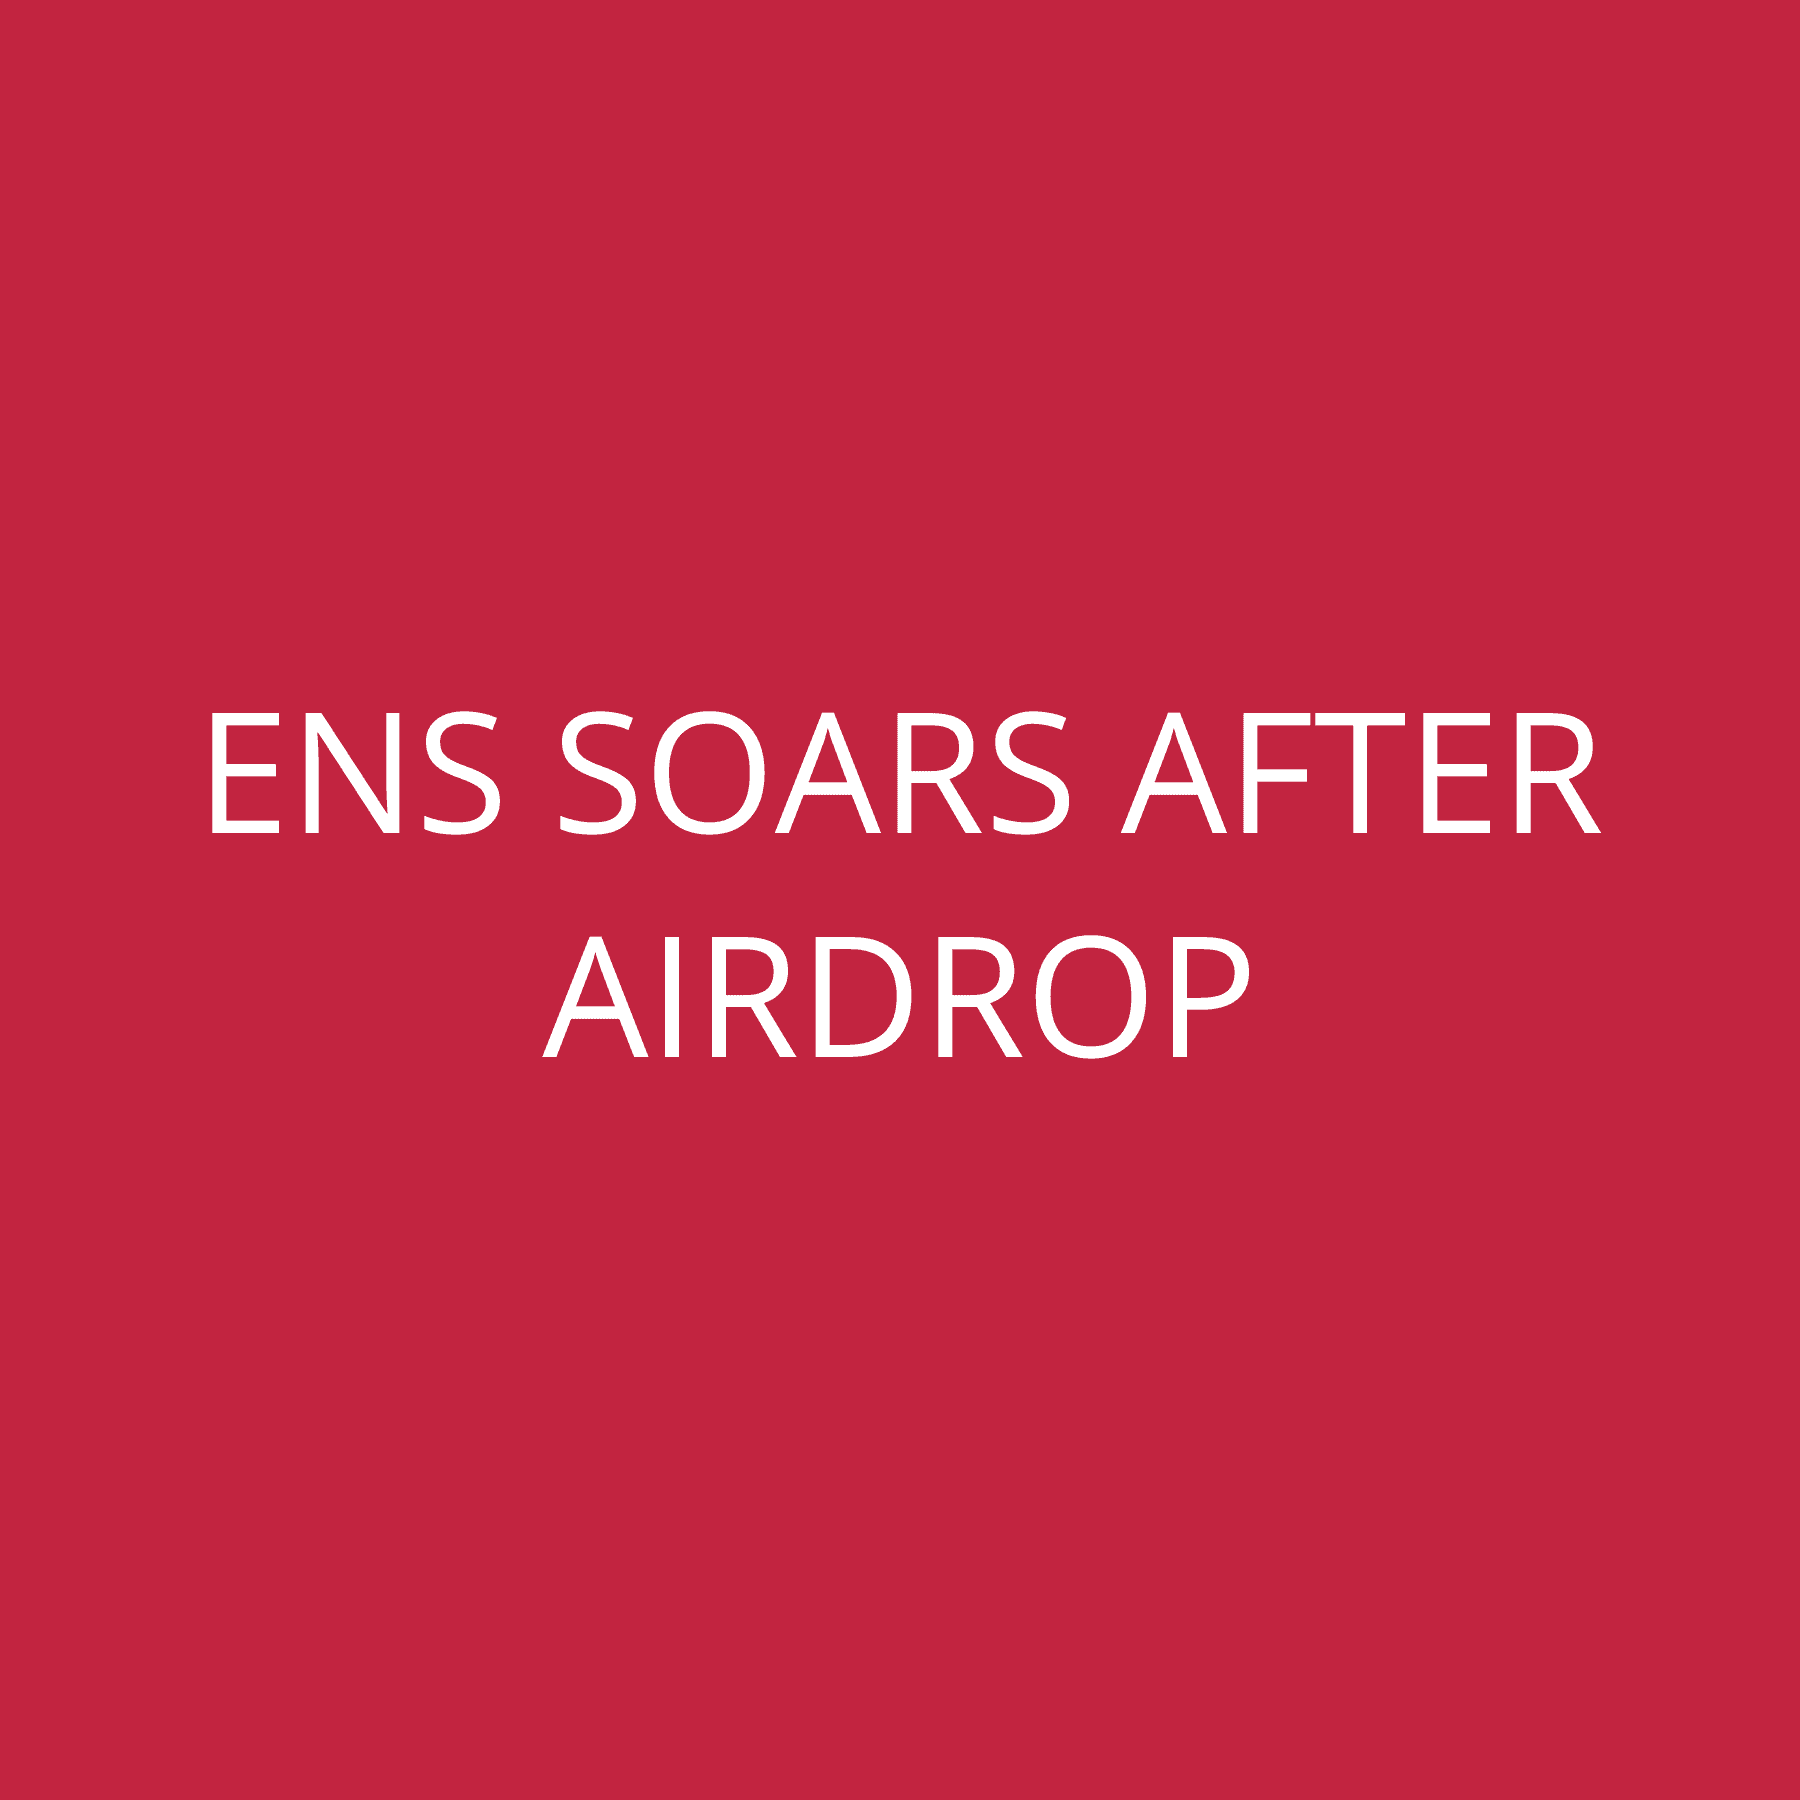 ENS soars after airdrop